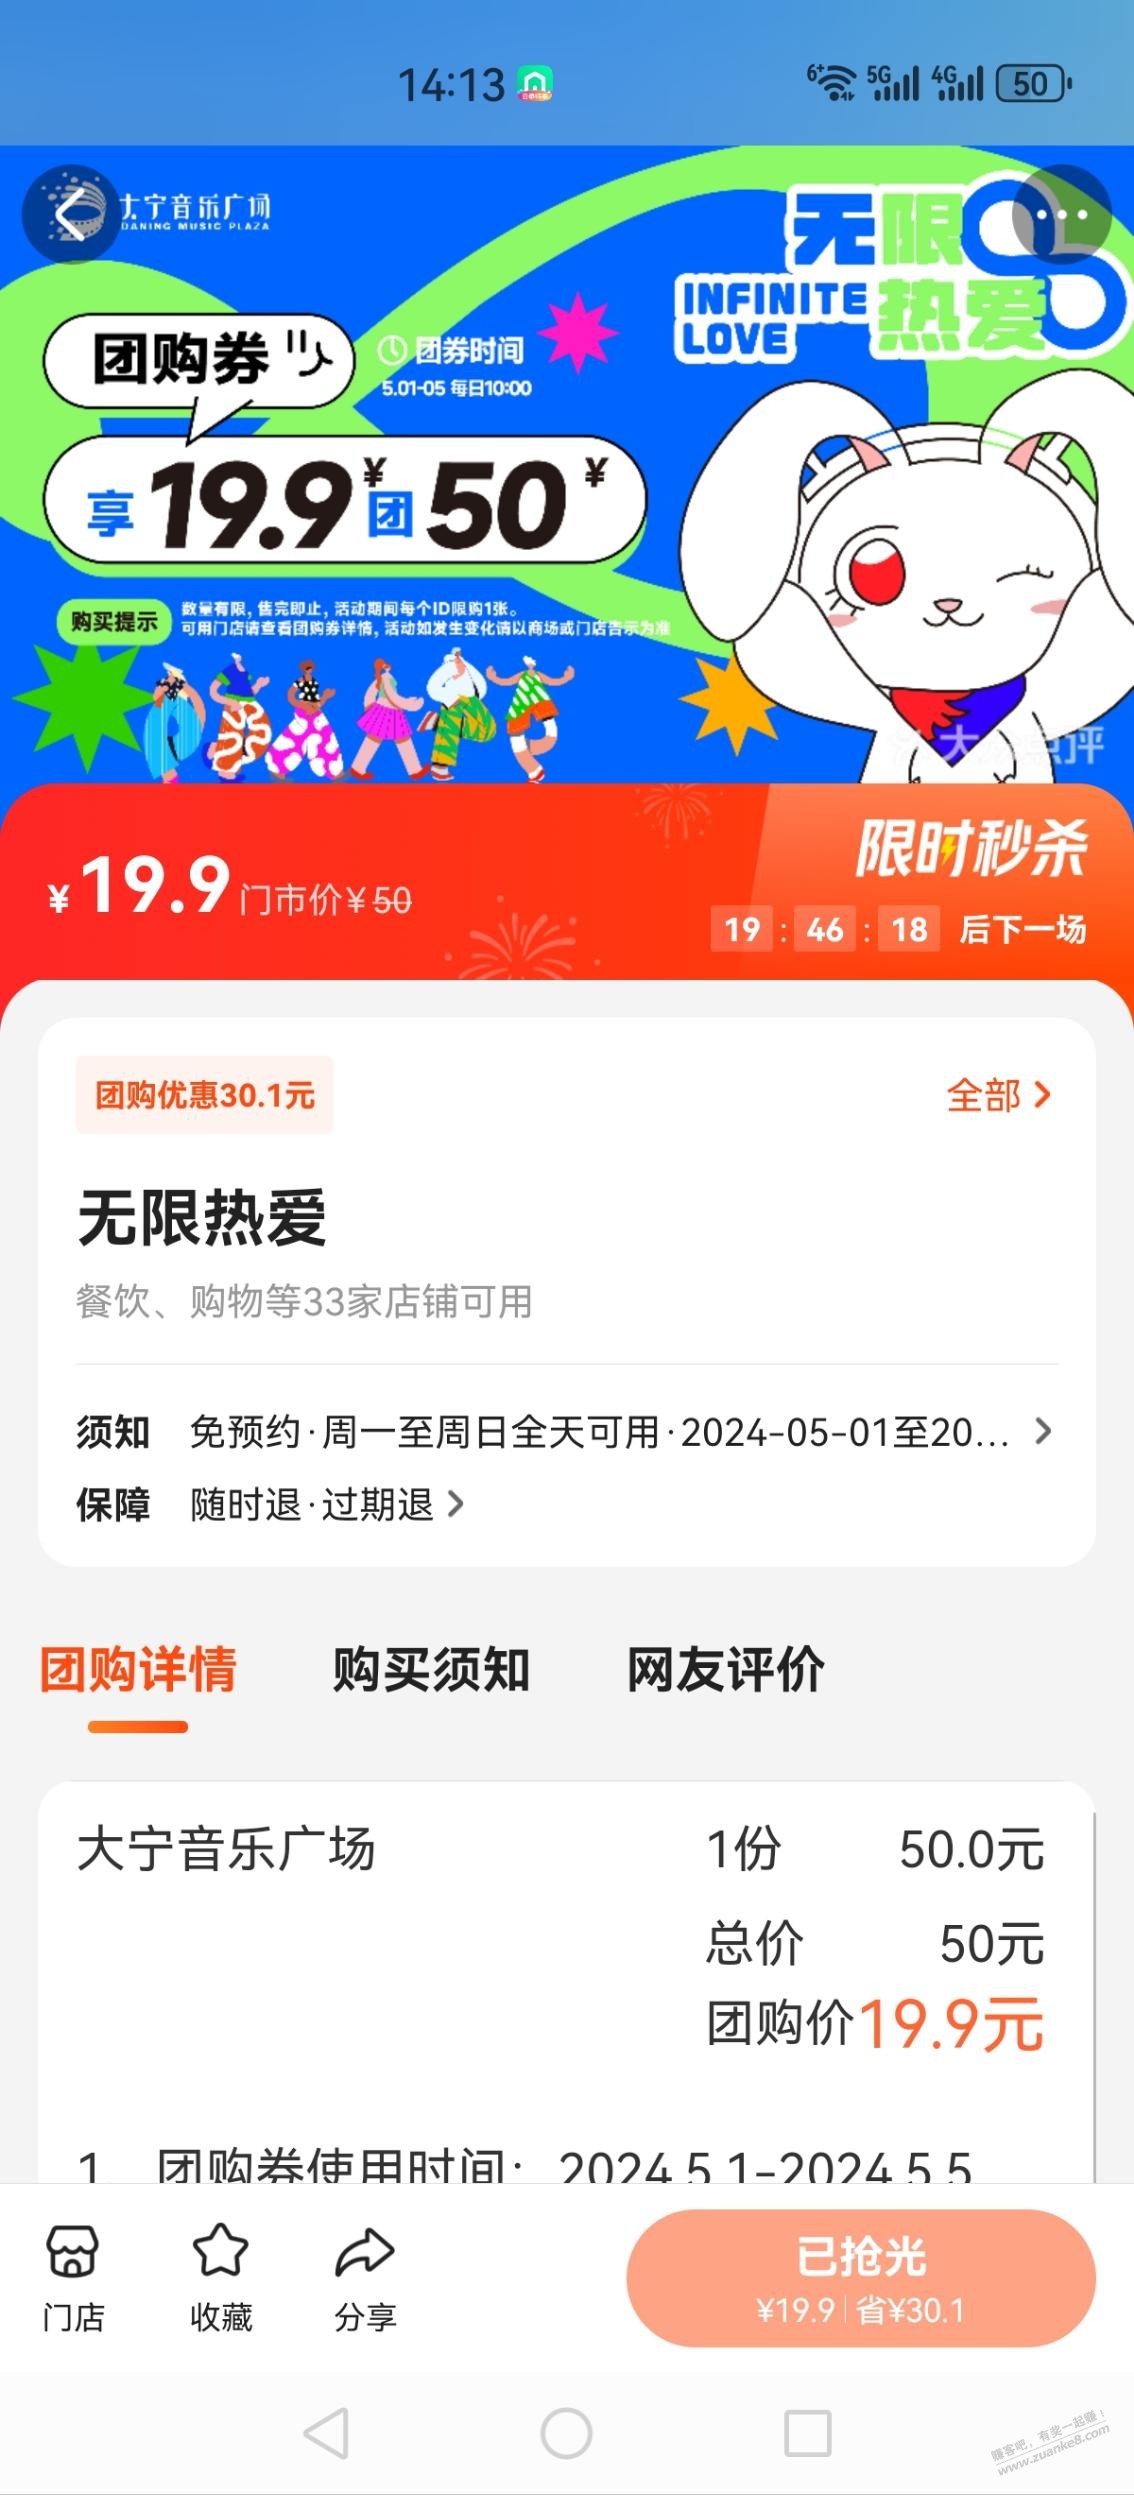 上海五五购物节大宁音乐广场19.9抵50元券